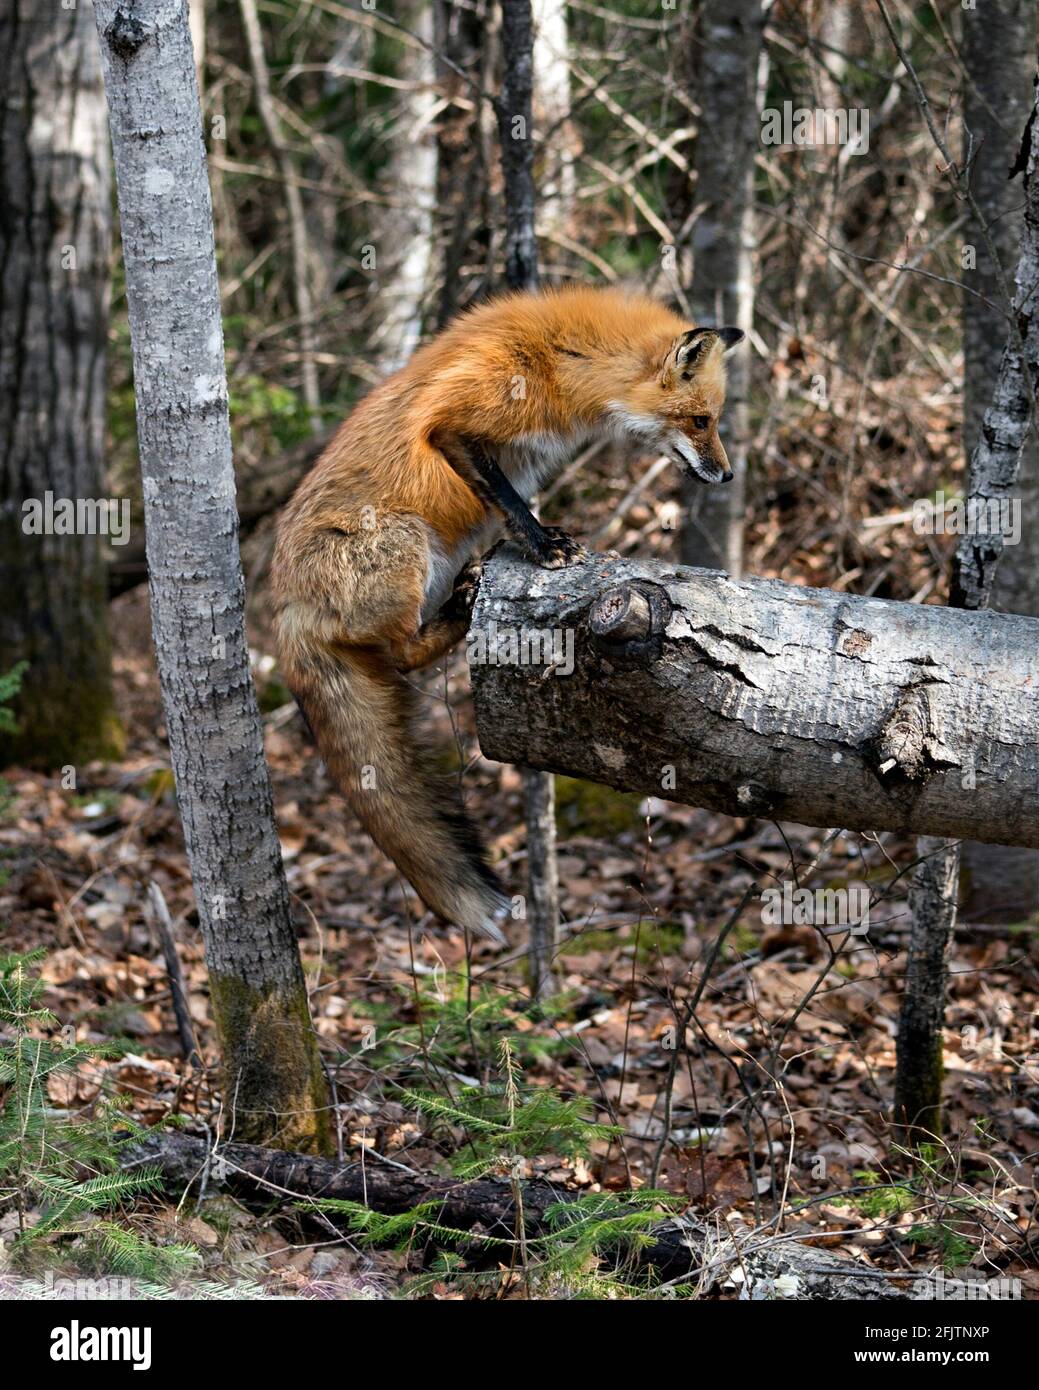 Red Fox primo piano profilo vista saltando su un log nella foresta con sfondo sfocato nel suo ambiente e habitat. Immagine. Verticale. Foto. Immagine FOX. Foto Stock